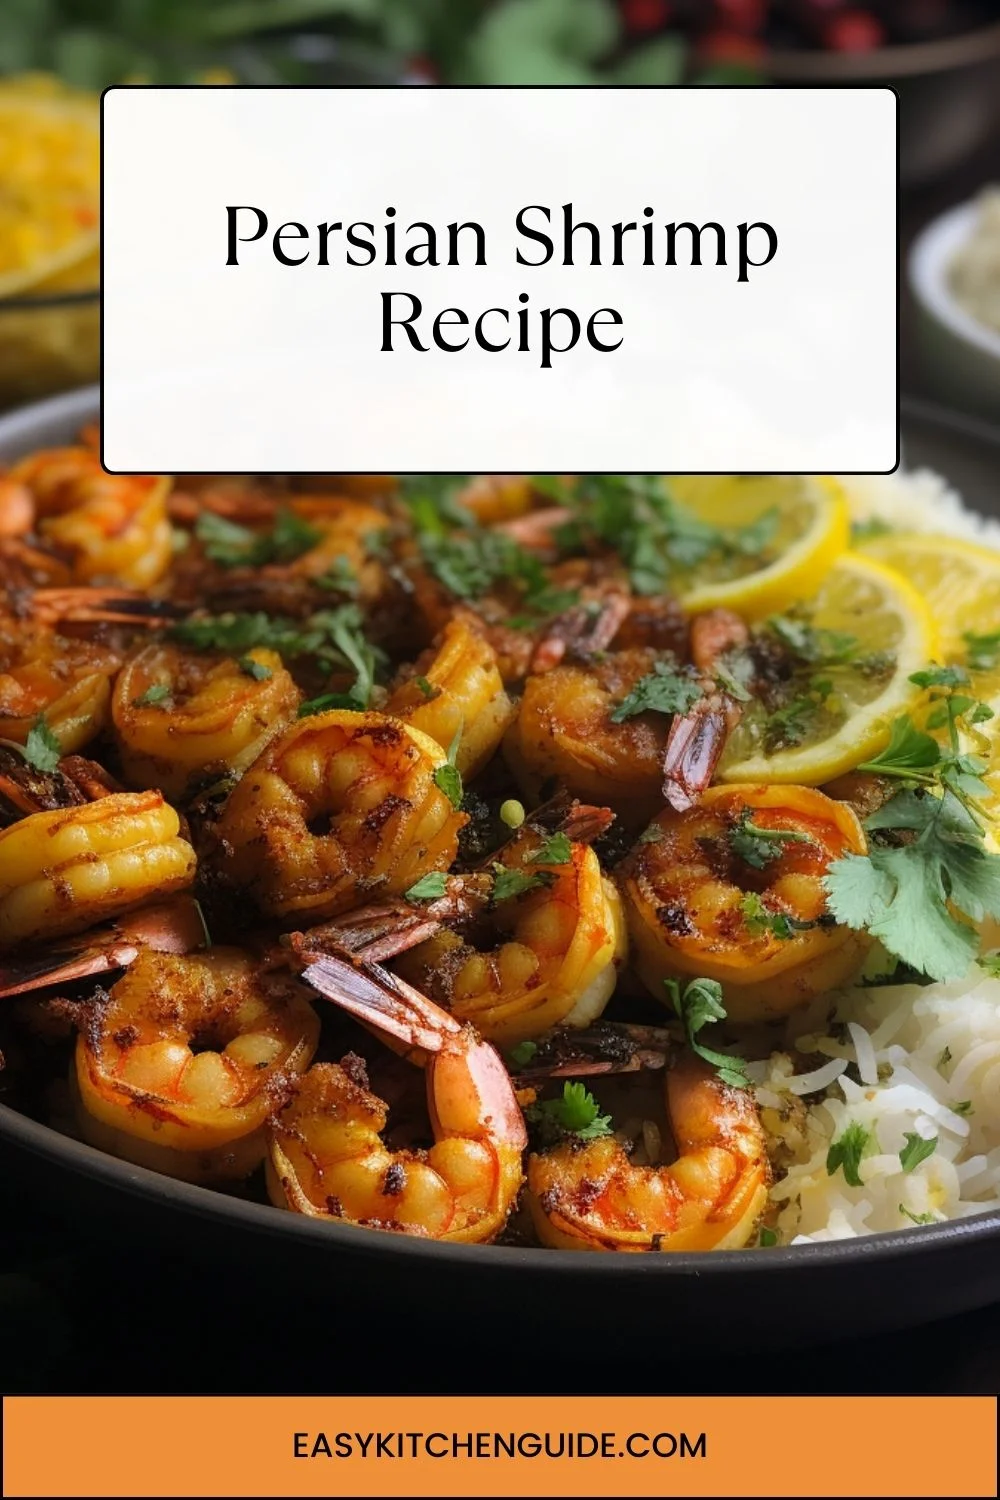 Persian Shrimp Recipe